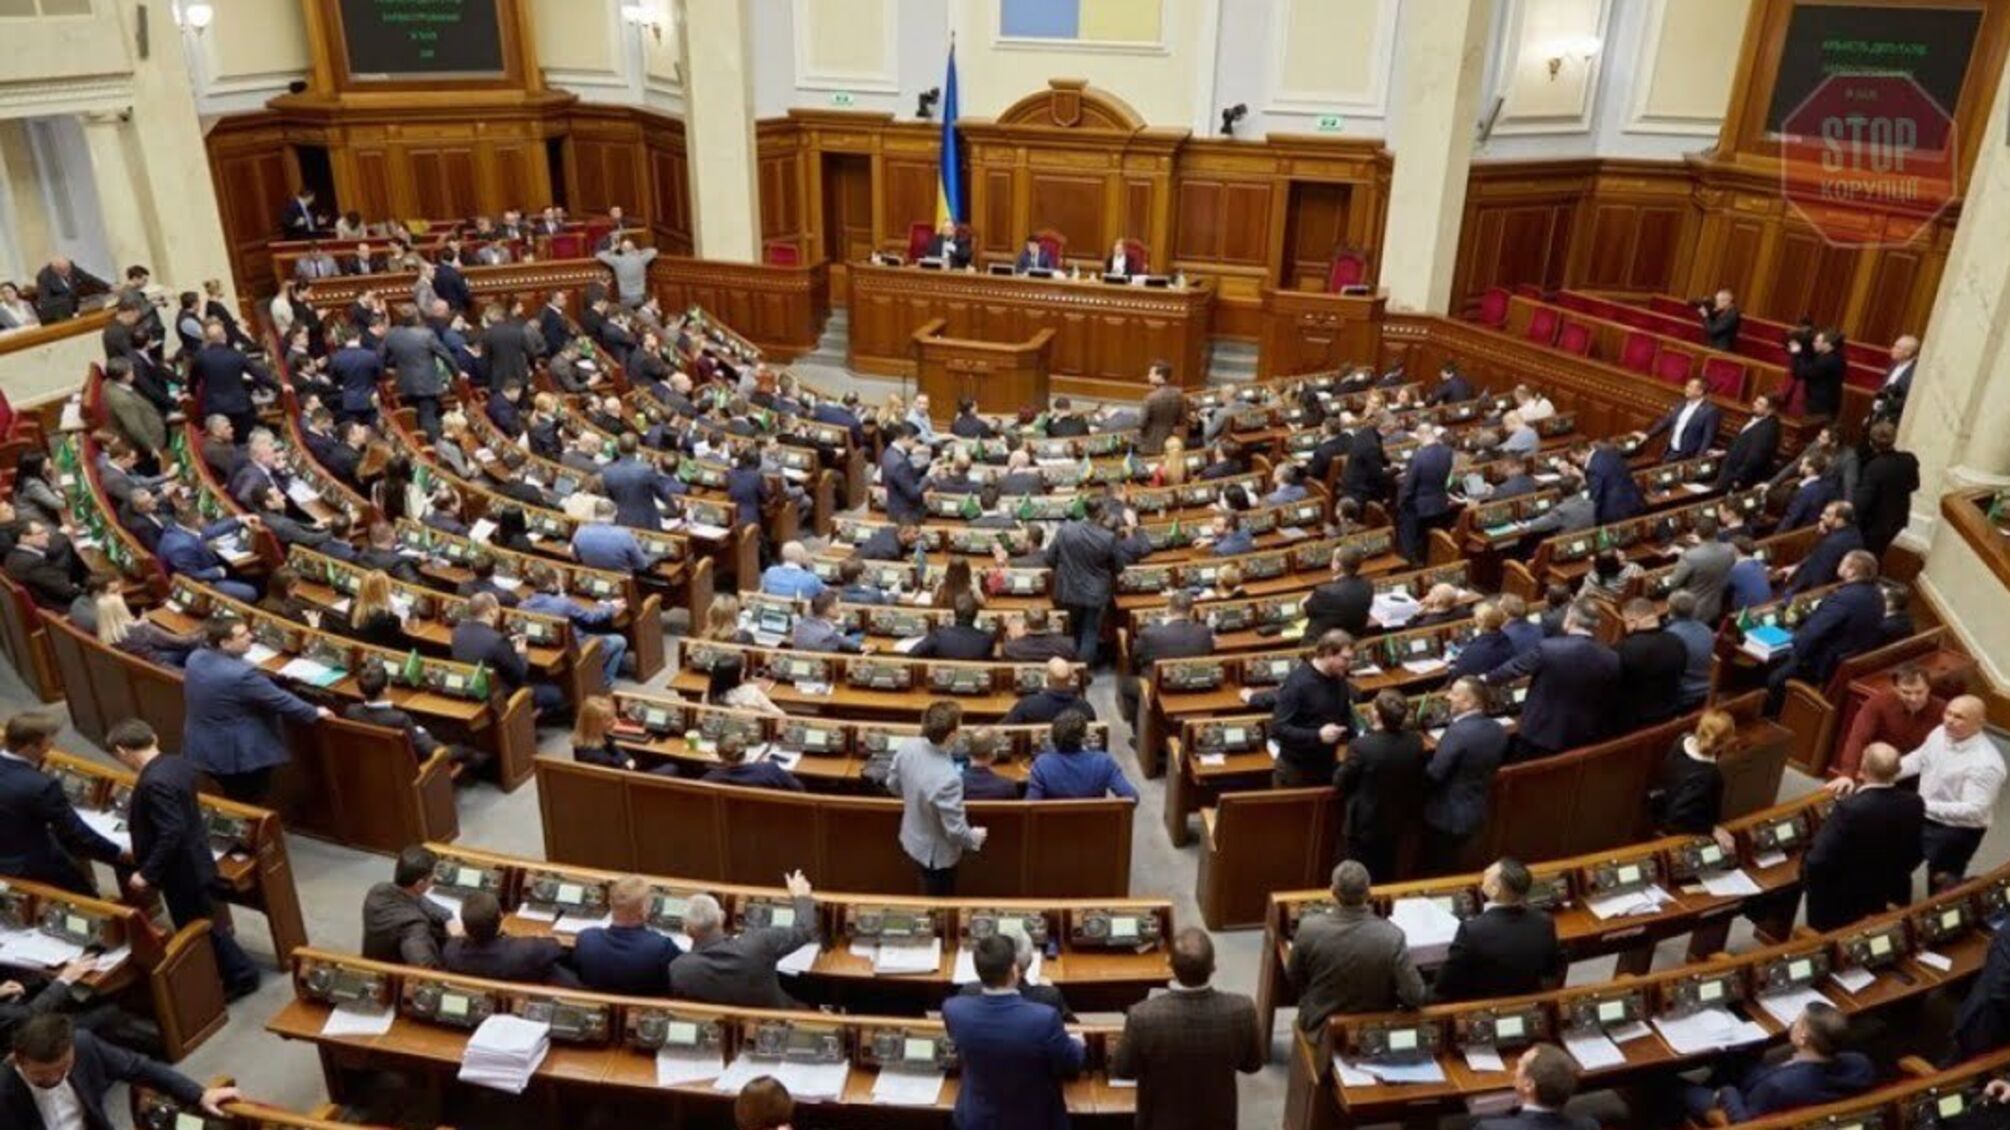 Нардепи прийняли законопроєкт: в Україні запускають автоматичне нарахування пенсій